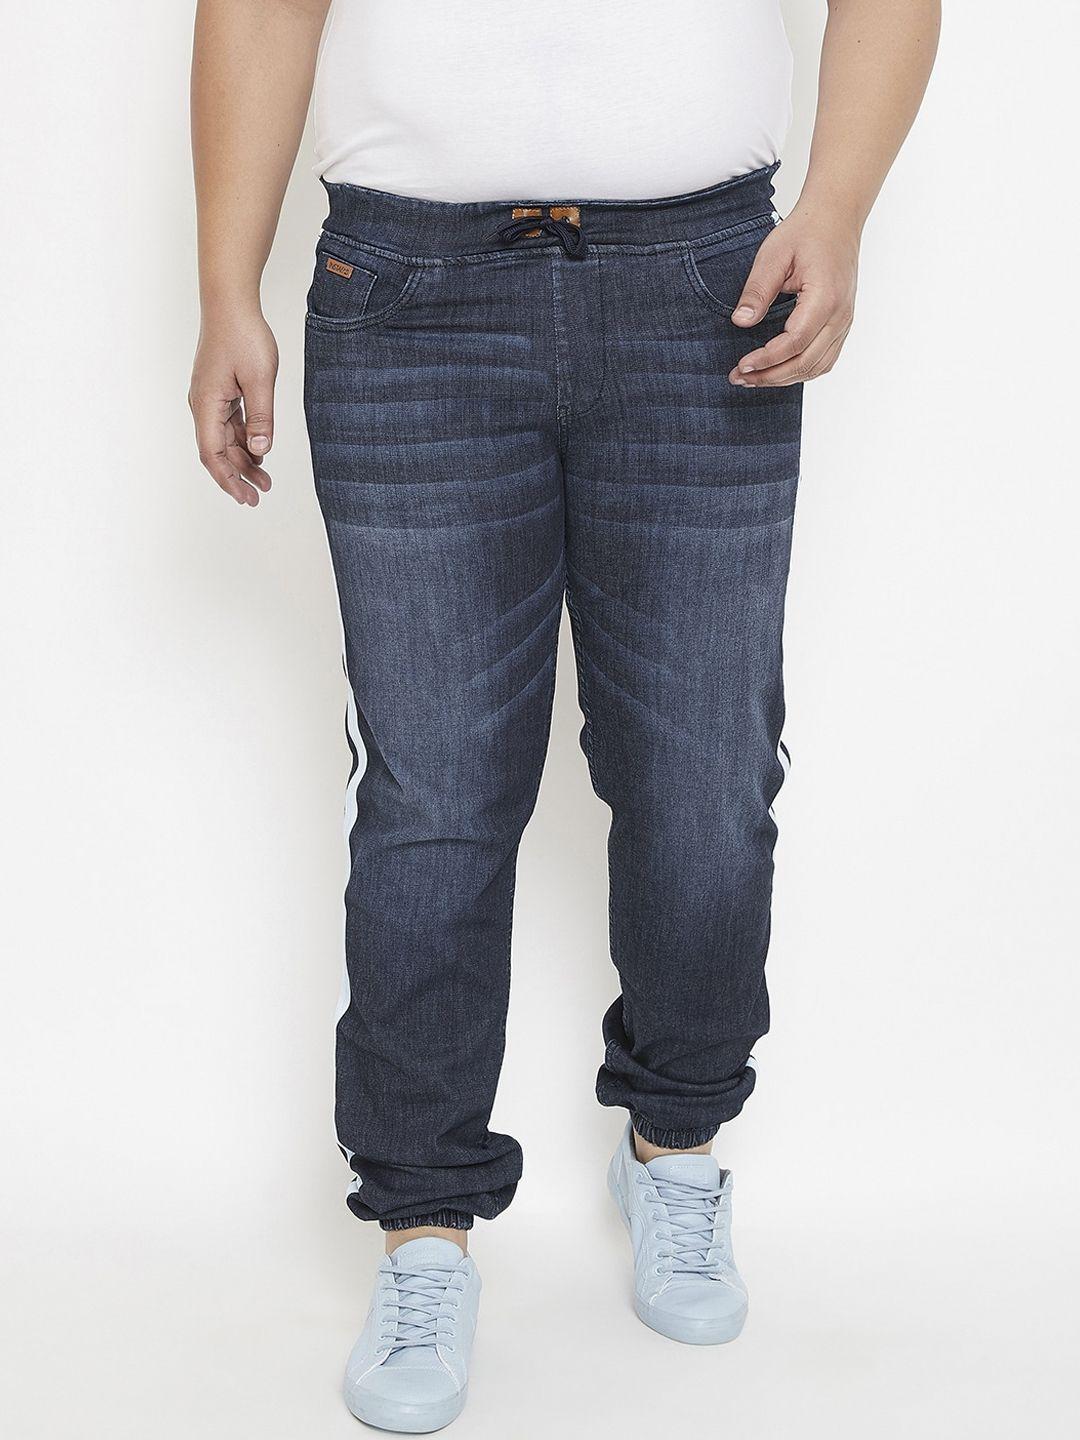 instafab-plus-men-blue-jogger-mid-rise-clean-look-jeans